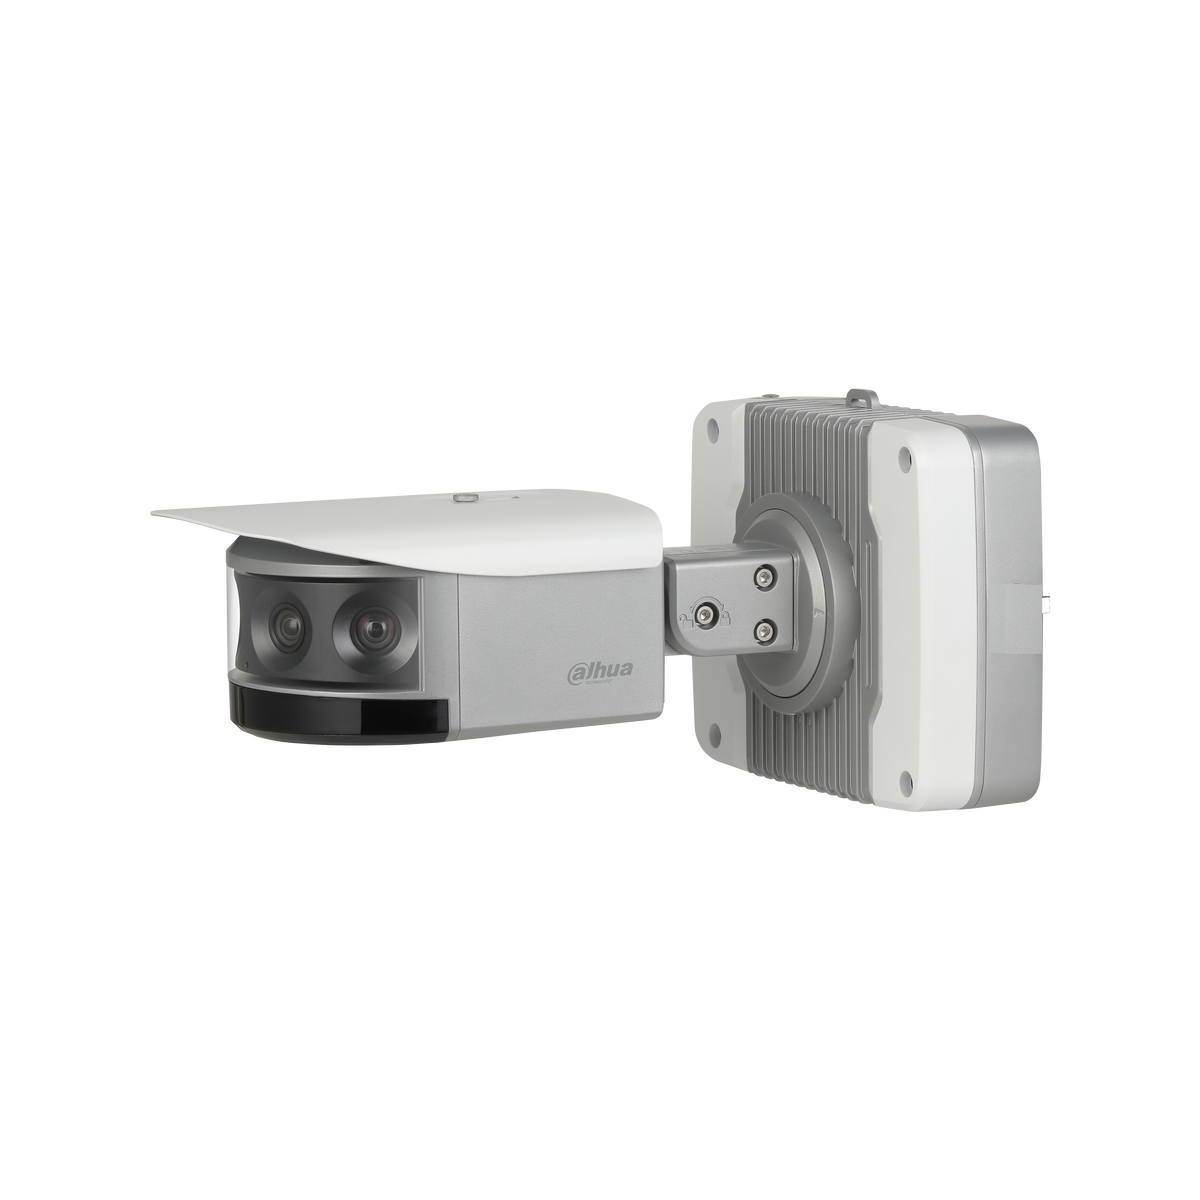 DAHUA IPC-PF83230-A180 4x8MP Multi-Sensor Panoramic Bullet Network Camera